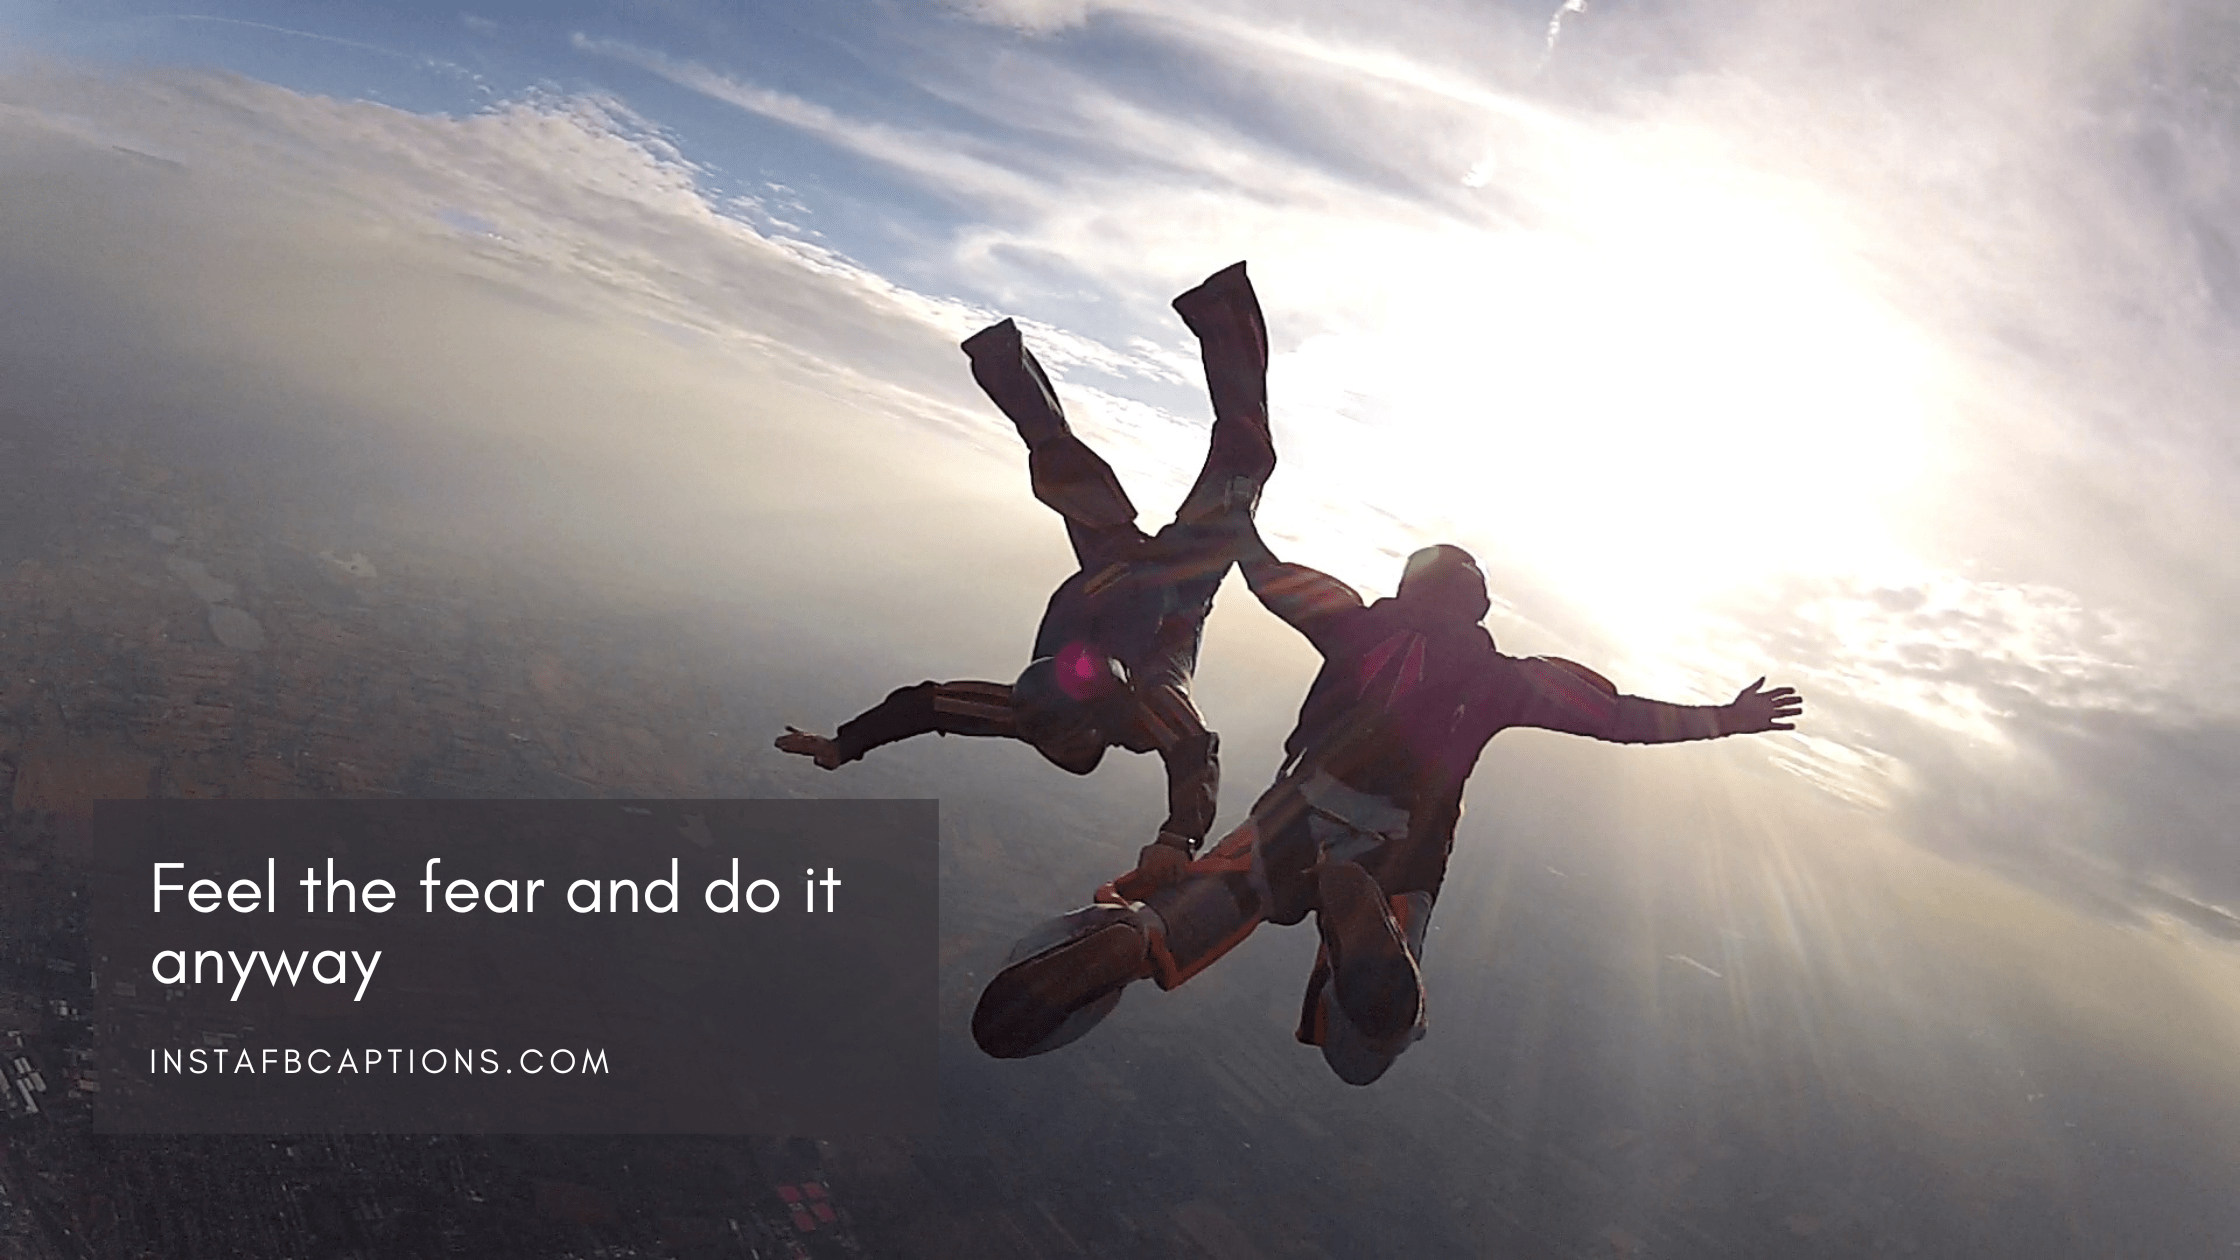 Skydiving Love Quotes  - Skydiving Love Quotes - 95 Skydiving Instagram Captions Quotes in 2022